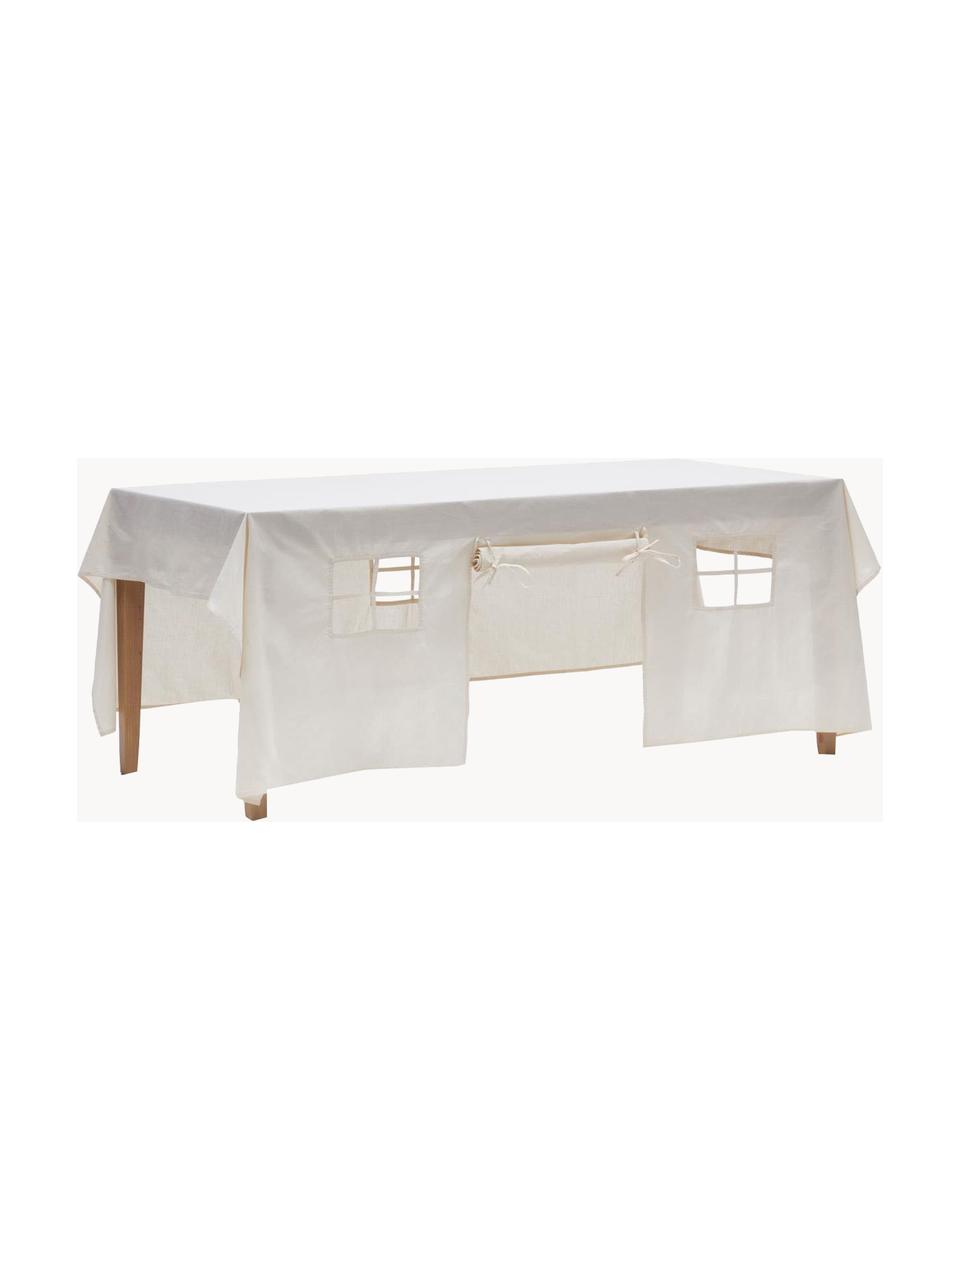 Spielhaus-Tischdecke Temis, 100 % Baumwolle, Off White, Für 6-8 Personen (L 230 x B 210 cm)